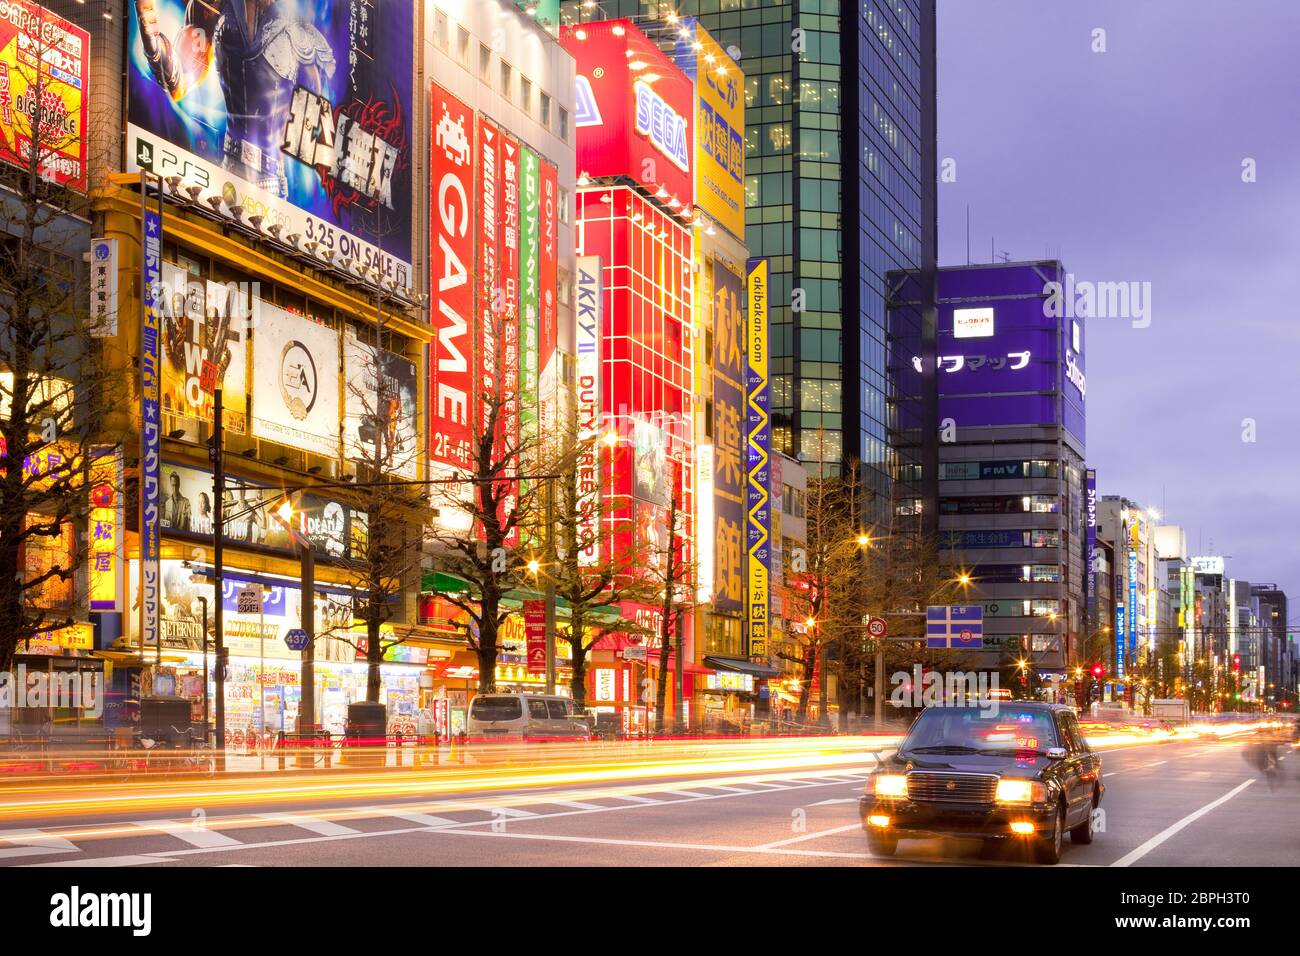 Akihabara Electric Town, Tokyo, Kanto Region, Honshu - Werbung Werbetafeln und Verkehr und Lichtwege bei Akihabara. Stockfoto